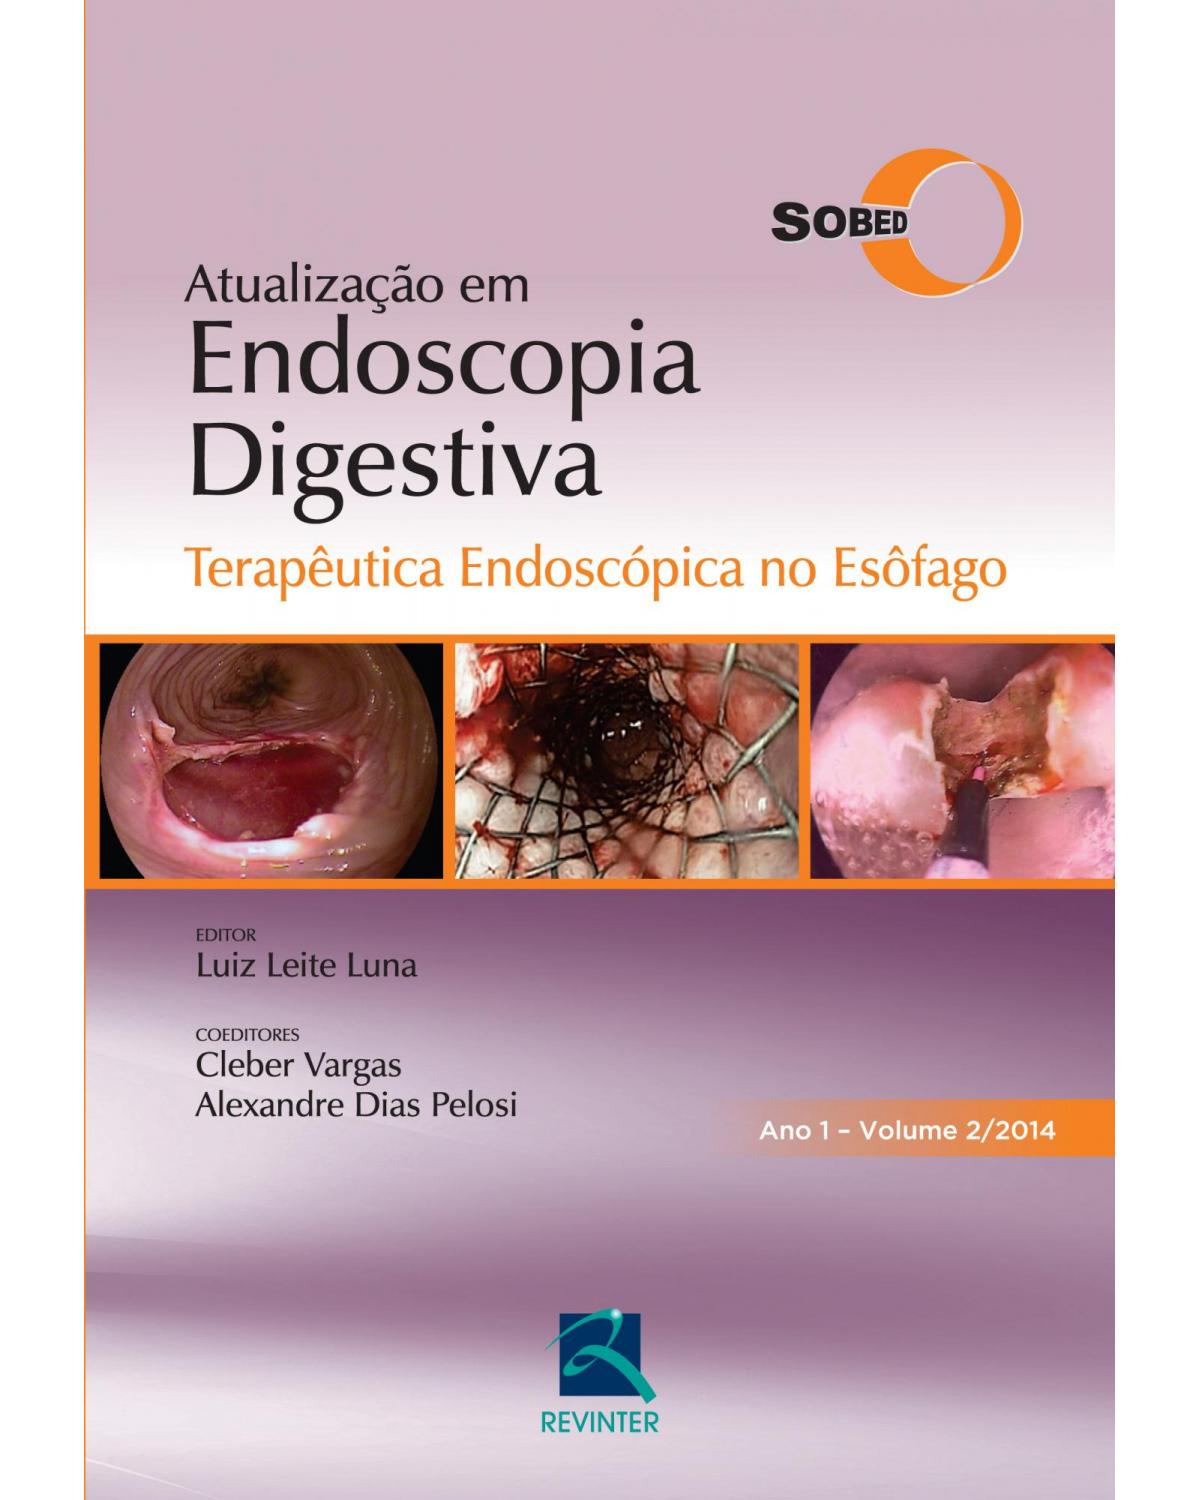 Atualização em endoscopia digestiva - Volume 2: terapêutica endoscópica no esôfago - Ano 1 - 1ª Edição | 2015